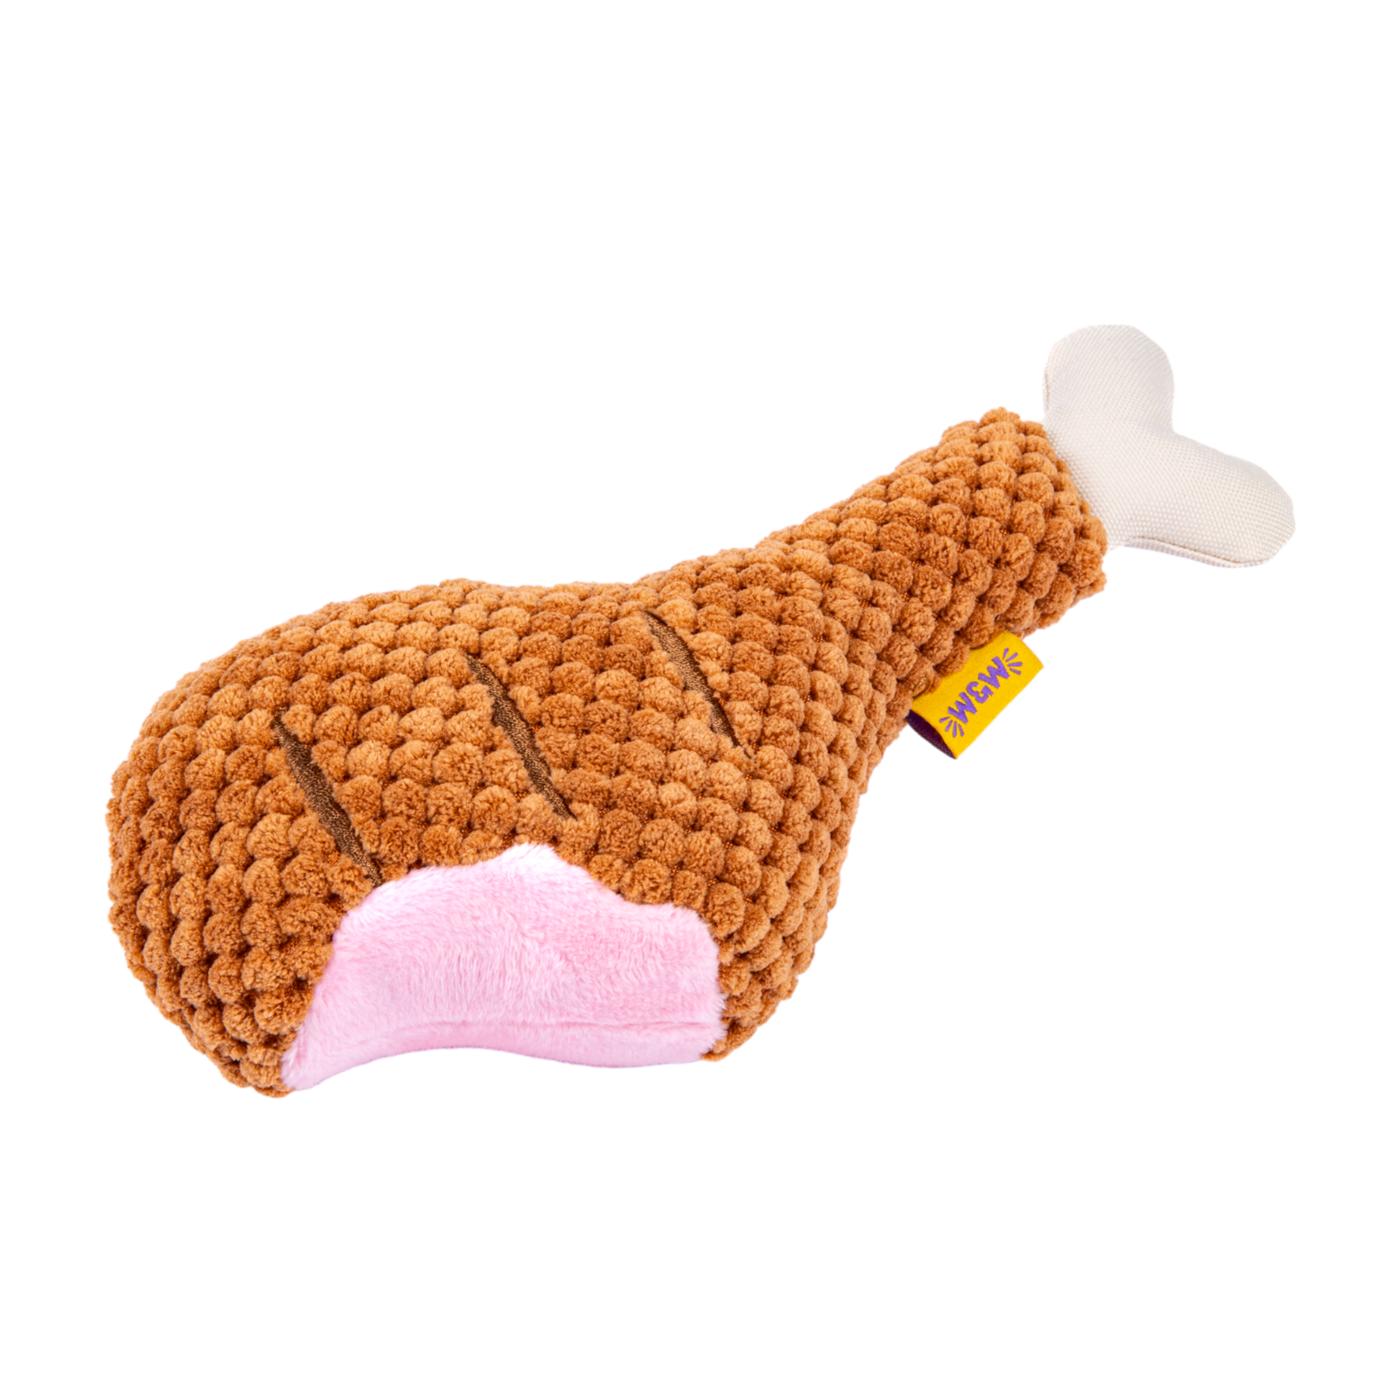 Woof & Whiskers Plush Dog Toy - Large Turkey Leg; image 1 of 5